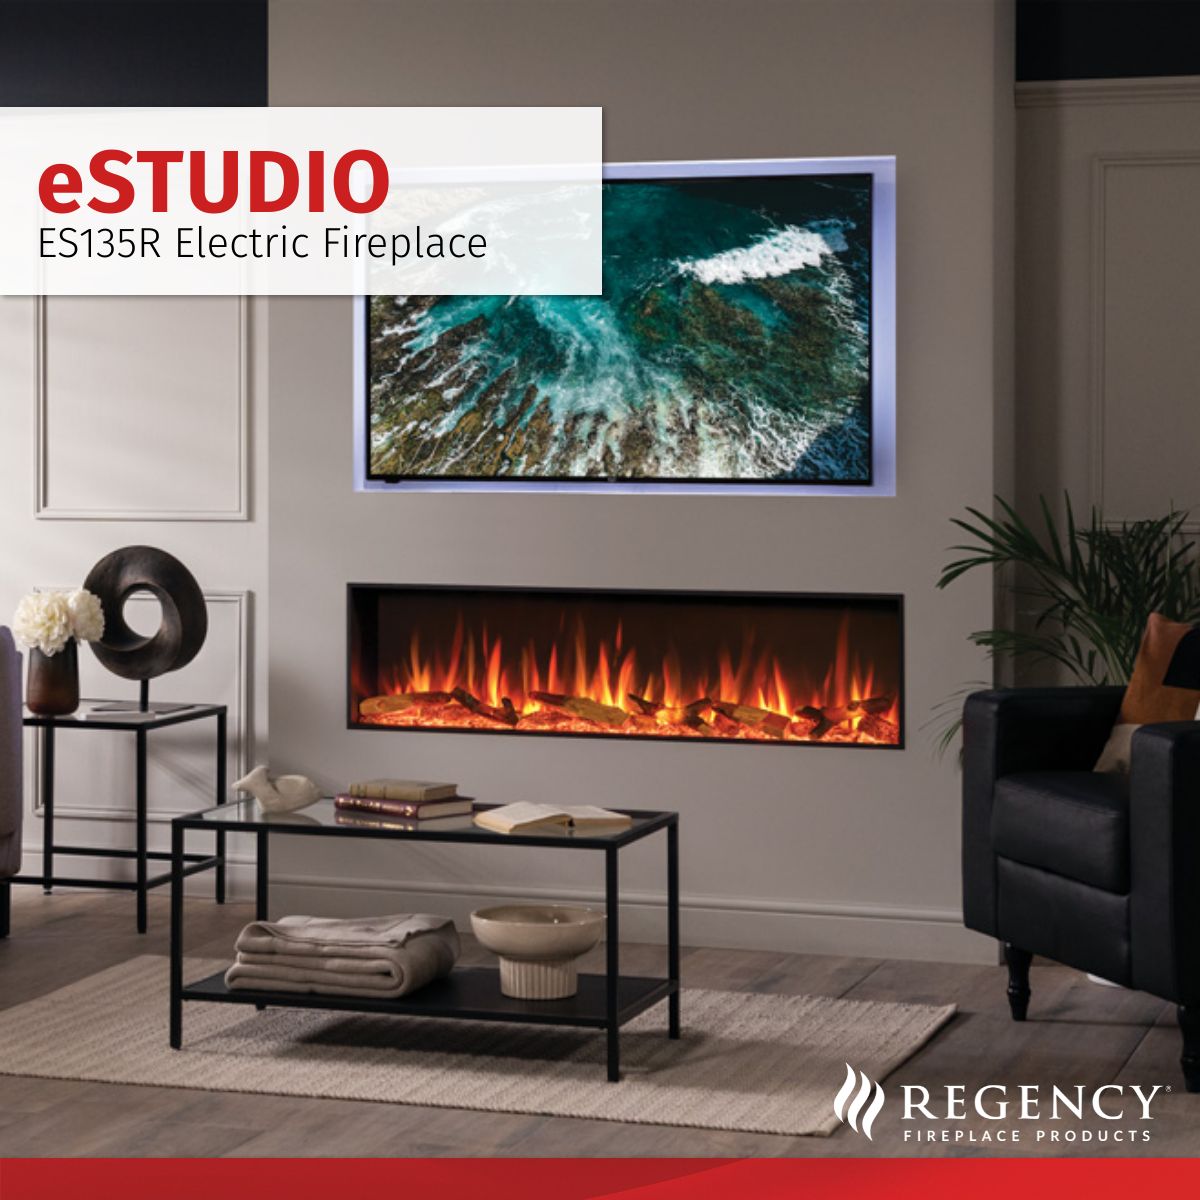 Regency eStudio Inset Electric Fire